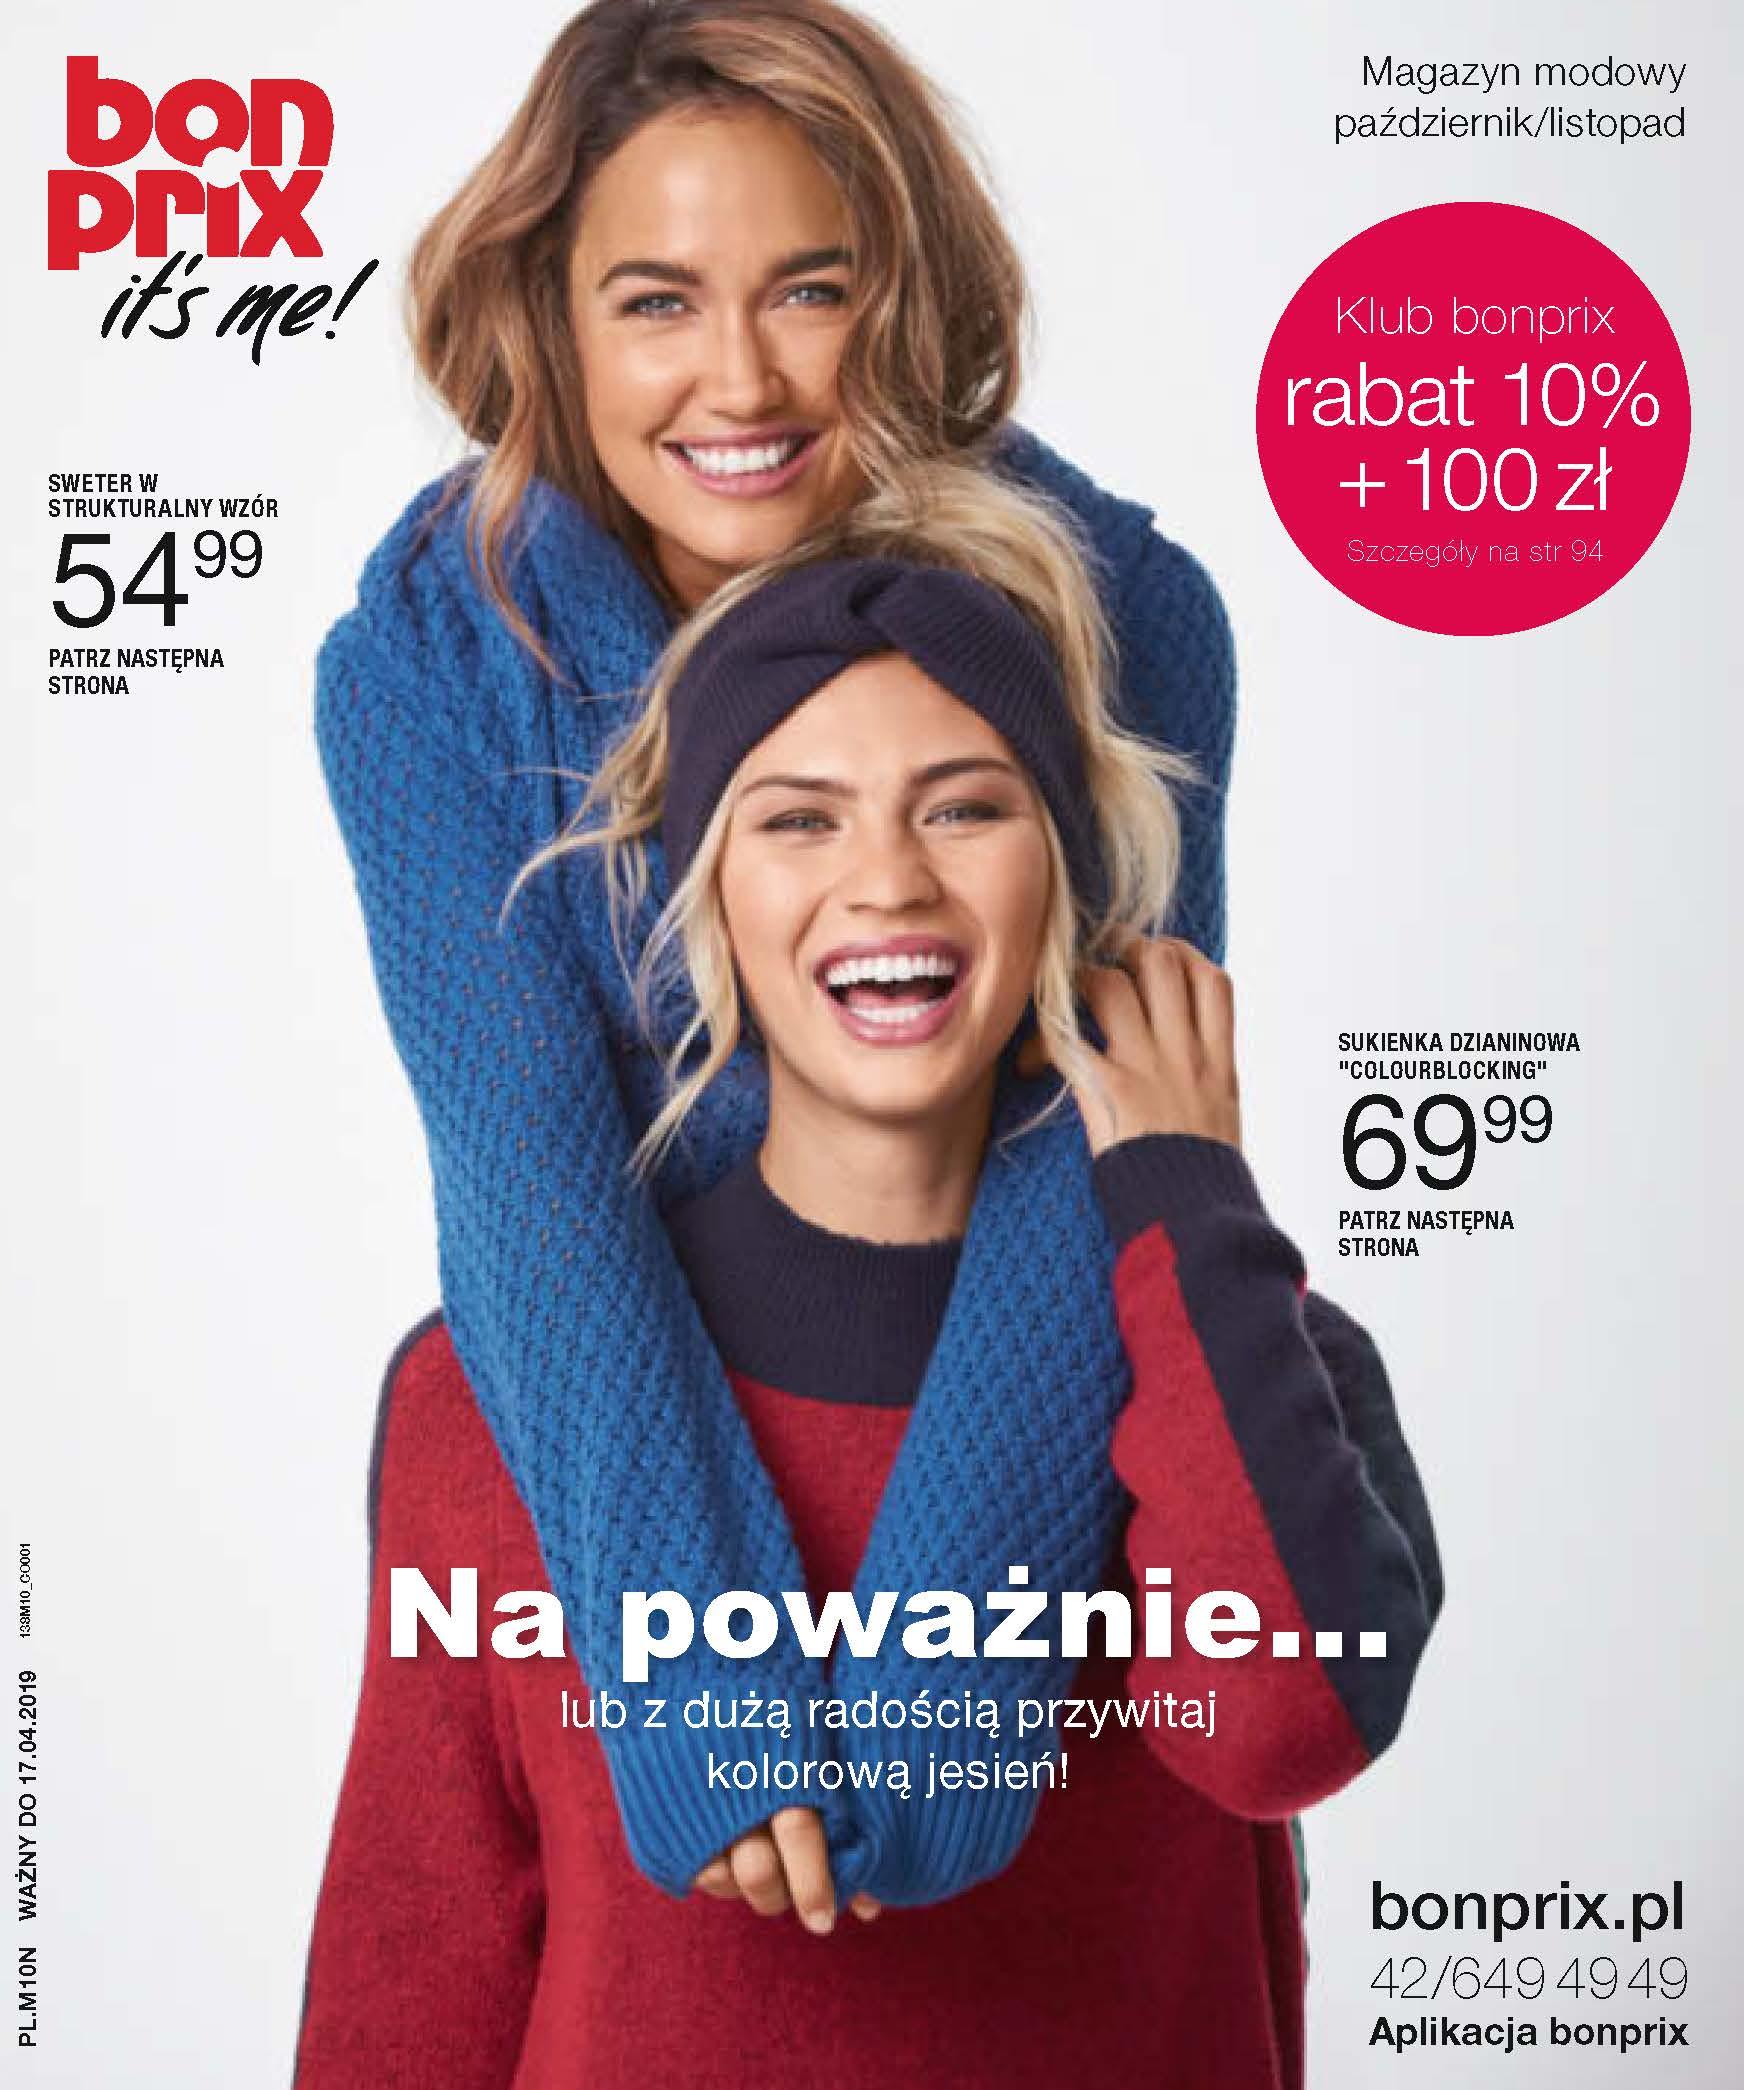 Gazetka promocyjna bonprix do 17/04/2019 str.1